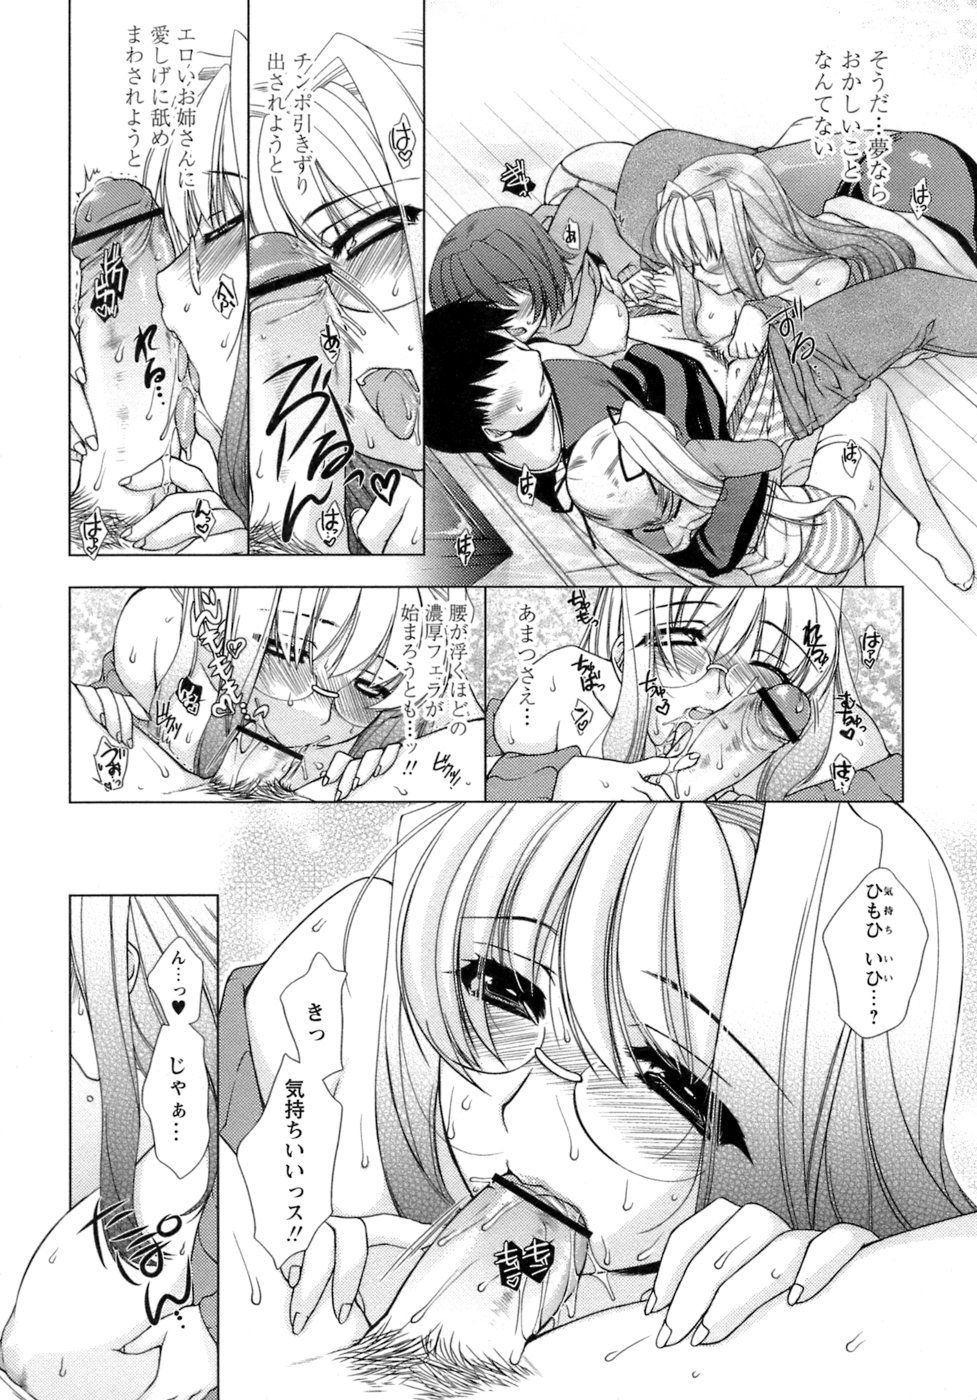 [Sumeragi Kohaku] Sweet^3 Room page 14 full